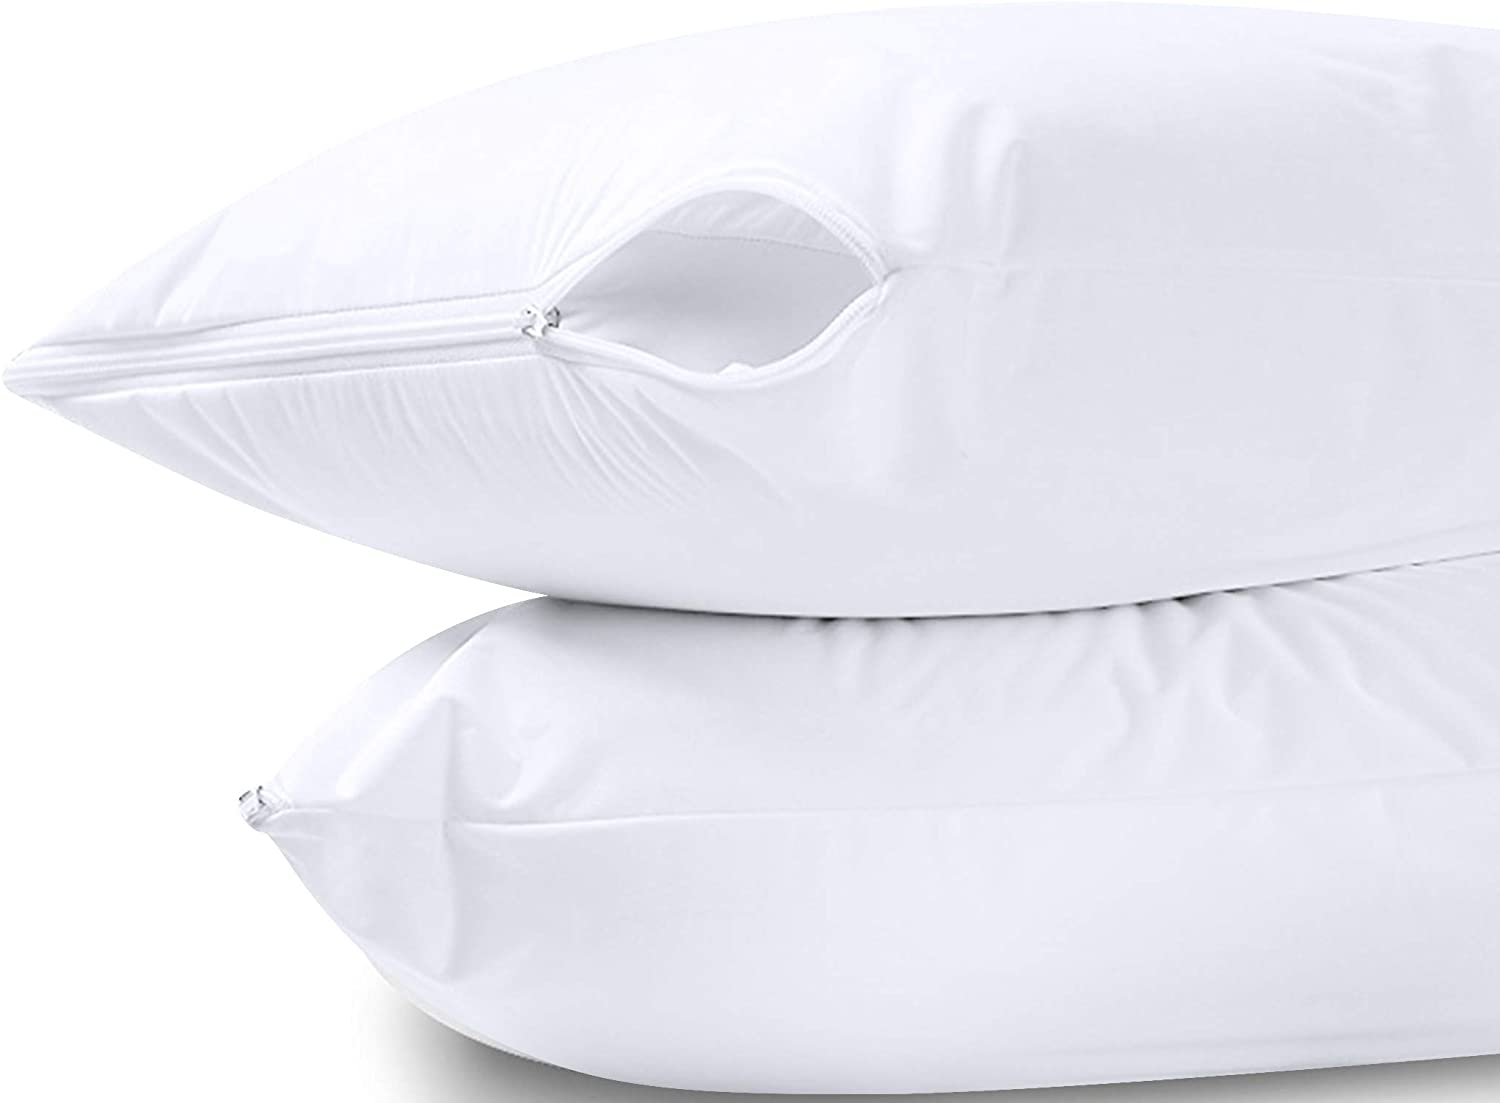 https://www.dontwasteyourmoney.com/wp-content/uploads/2020/09/utopia-bedding-waterproof-jersey-pillow-protectors-2-pack-pillow-protectors.jpg